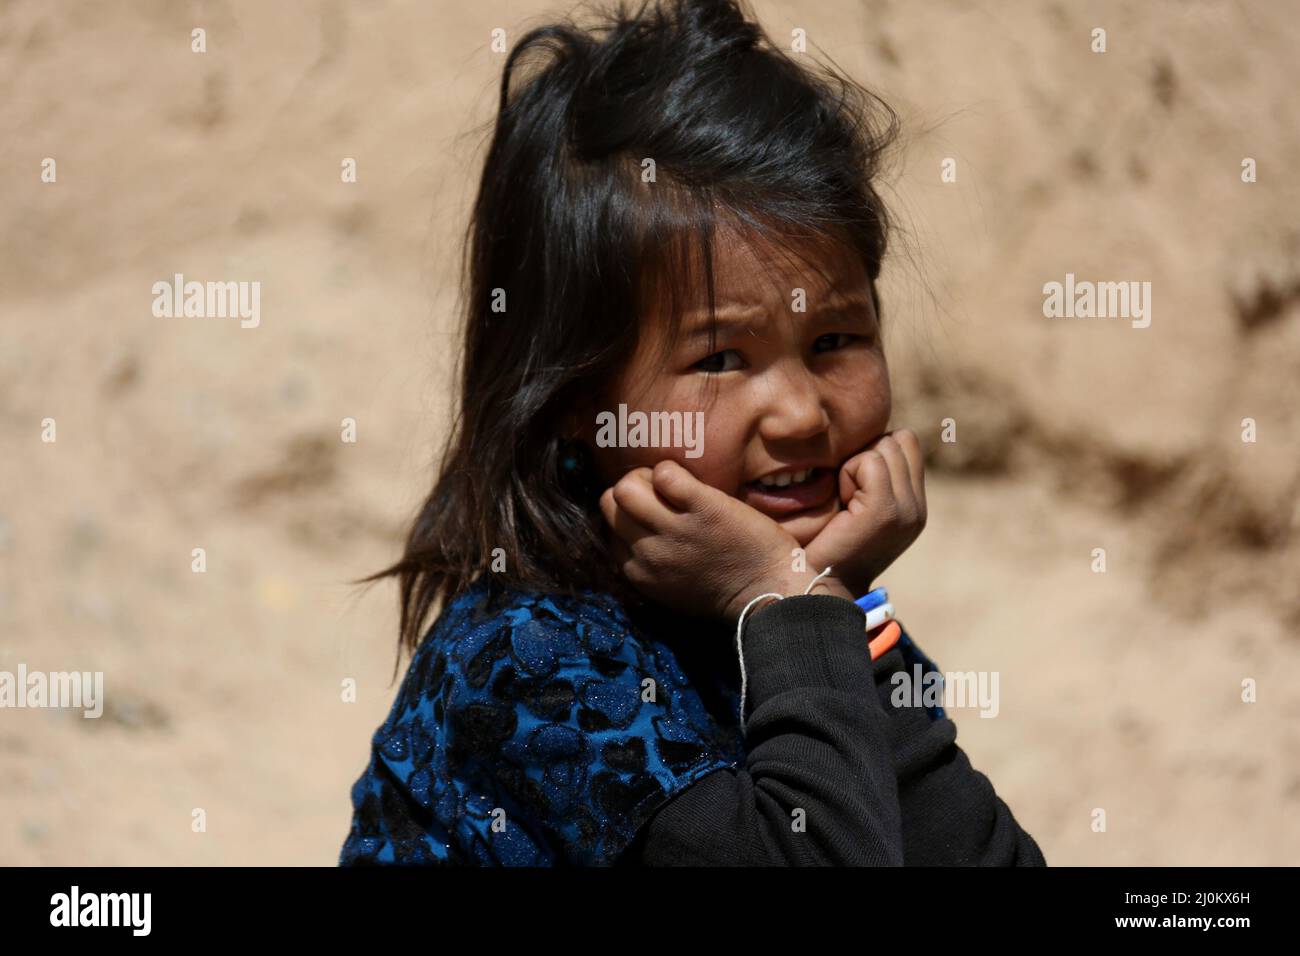 Bamiyan, Afghanistan. 19th mars 2022. Une fille afghane est vue près de la grotte dans laquelle elle vit dans la province de Bamiyan, en Afghanistan, le 19 mars 2022. Credit: Saifurahman Safi/Xinhua/Alamy Live News Banque D'Images